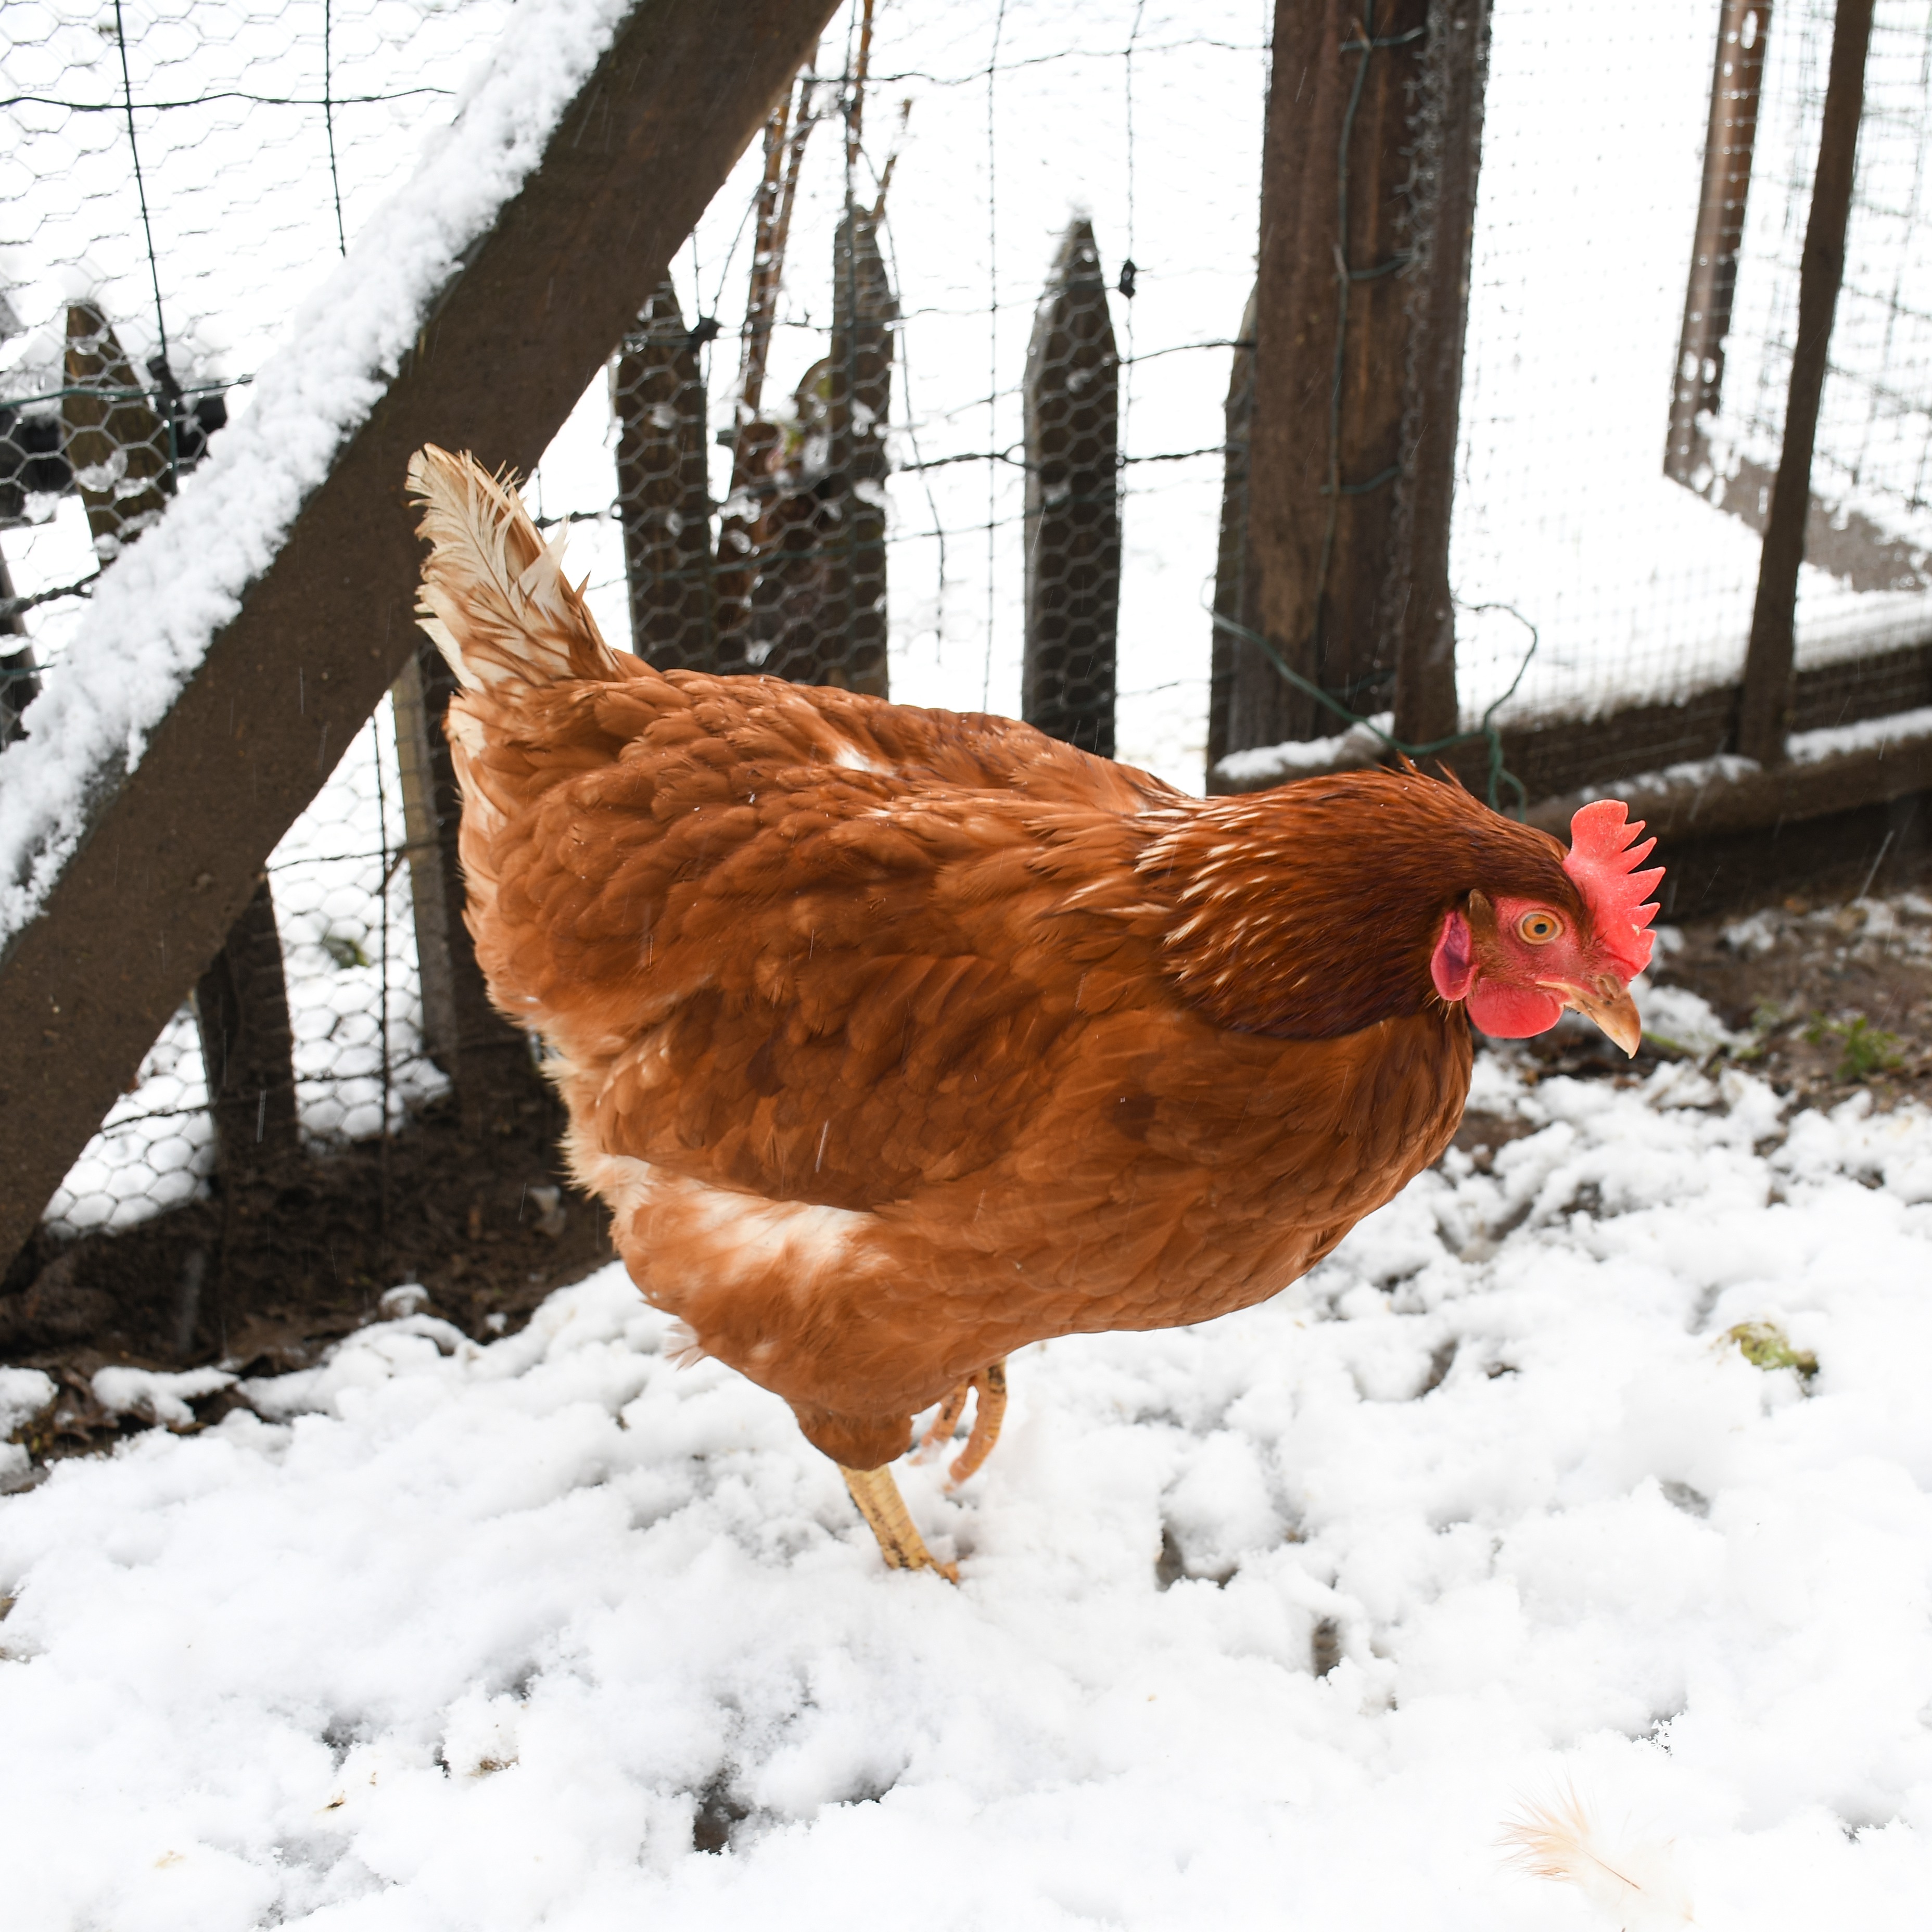 Des poules en hiver - Aveve